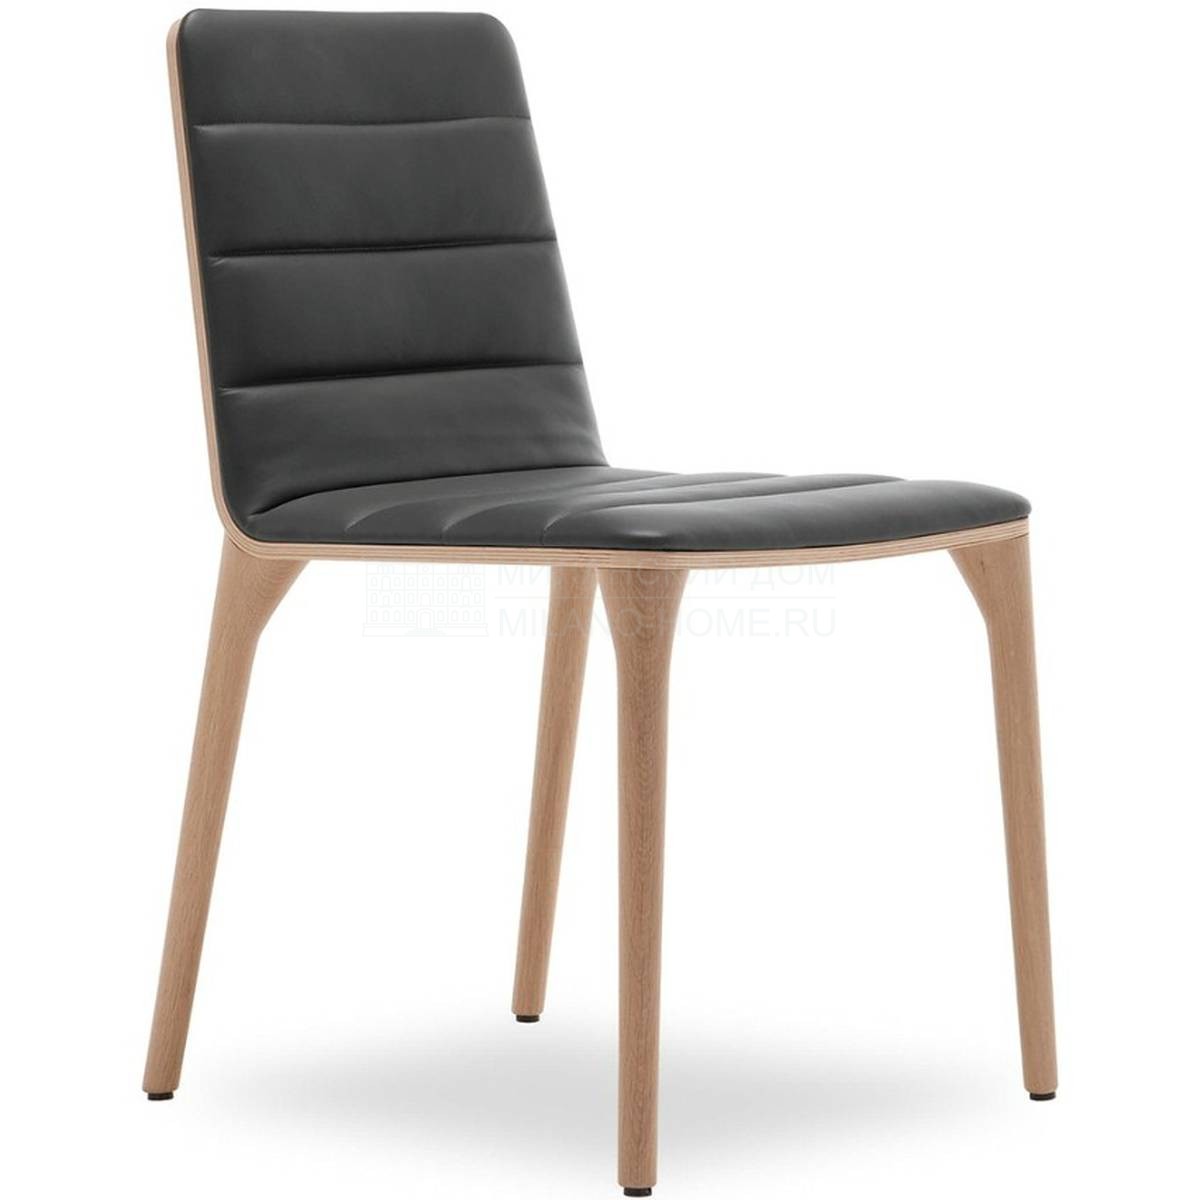 Кожаный стул Pit chair из Италии фабрики TONON